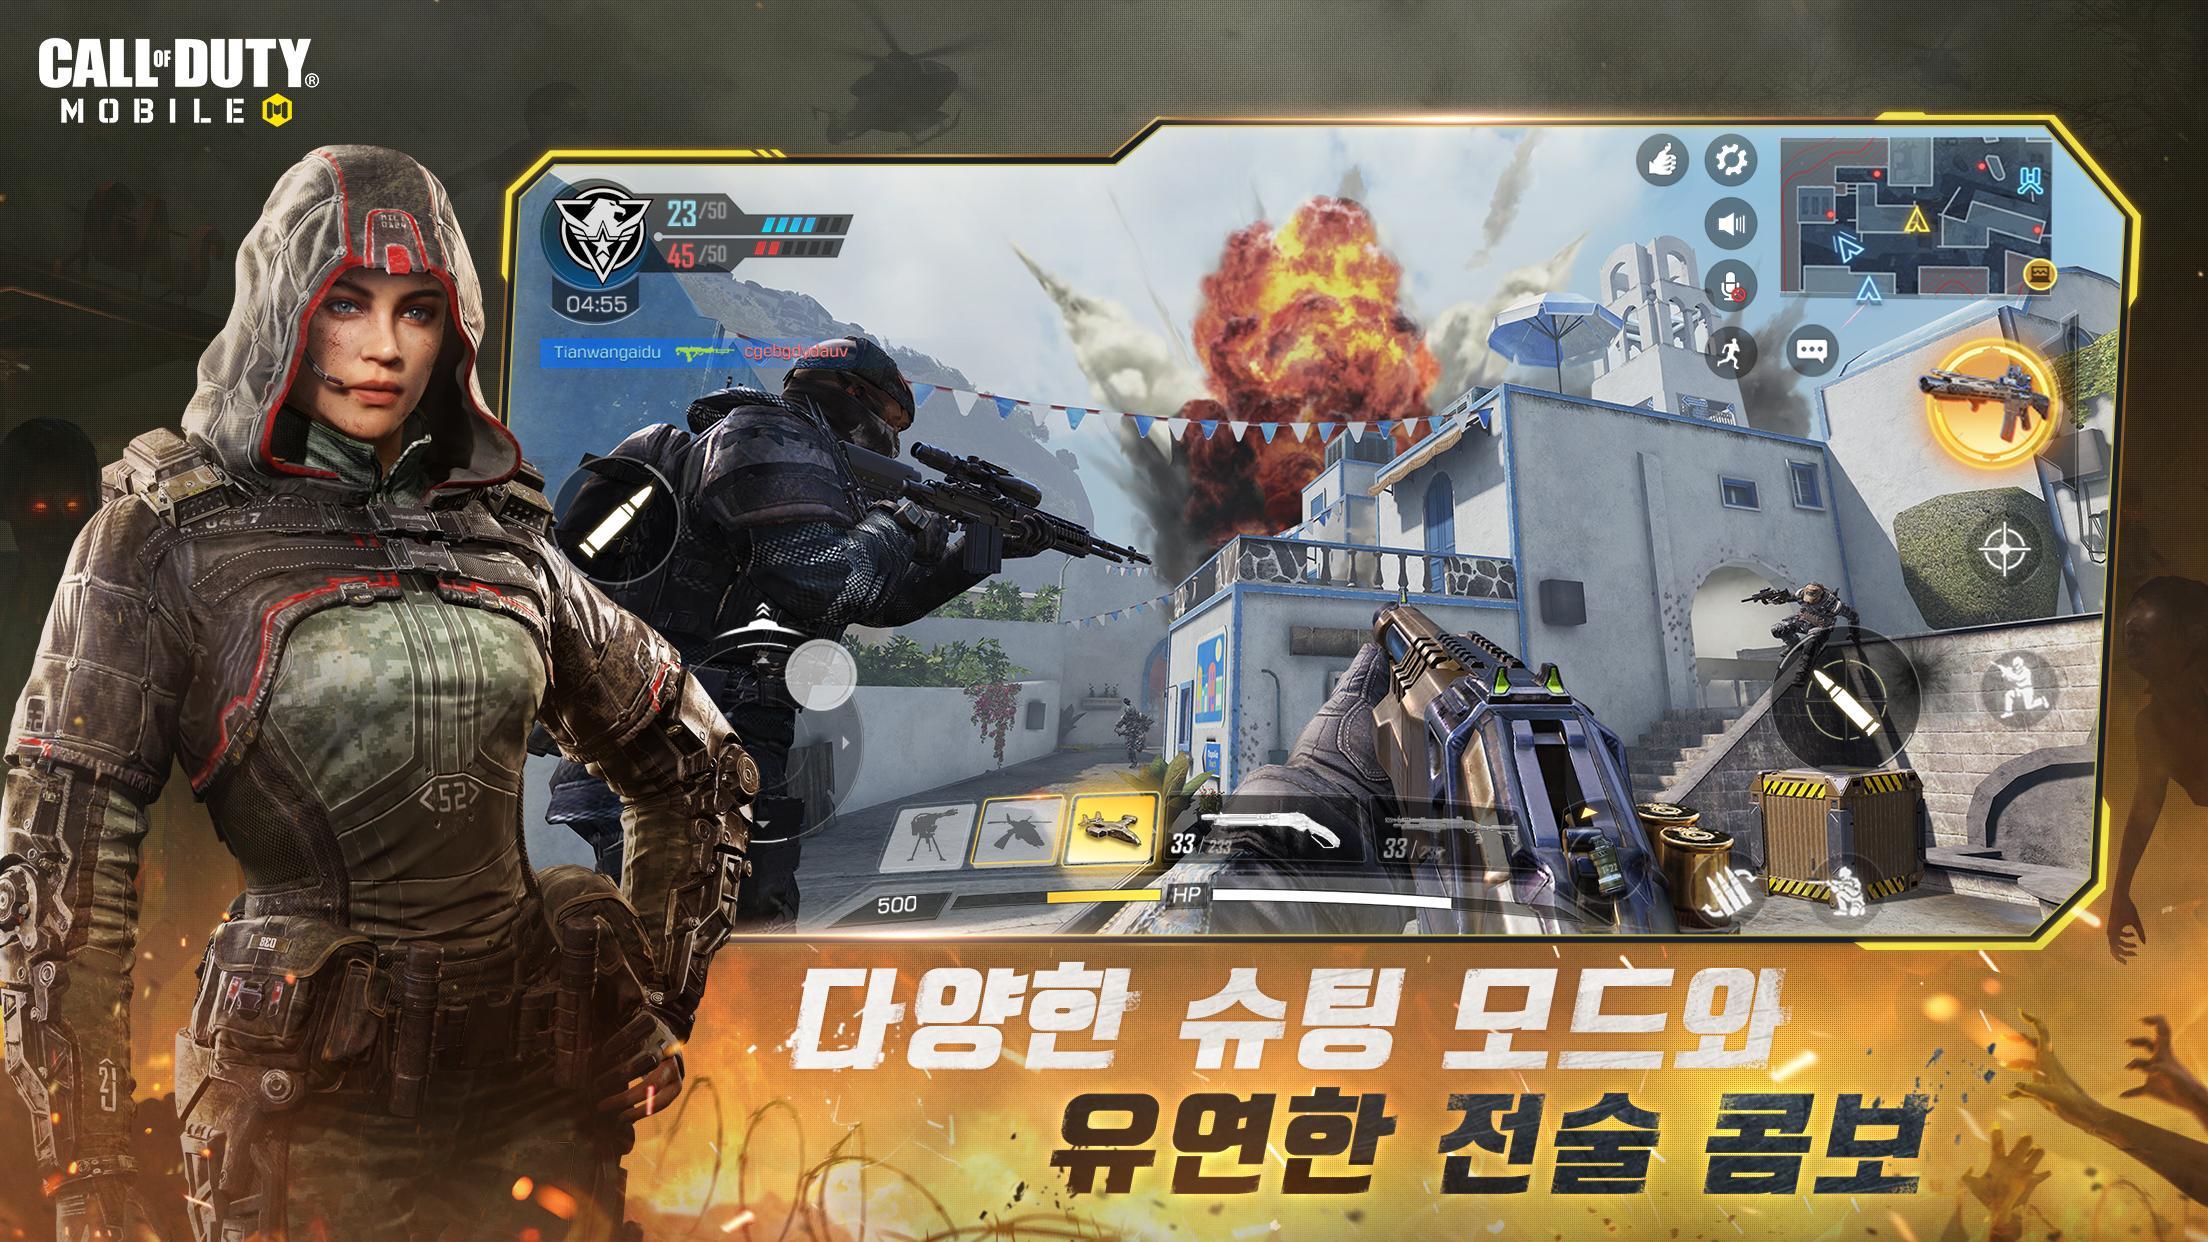 Call of Duty Mobile: famoso jogo de tiro surpreende no iOS e Android